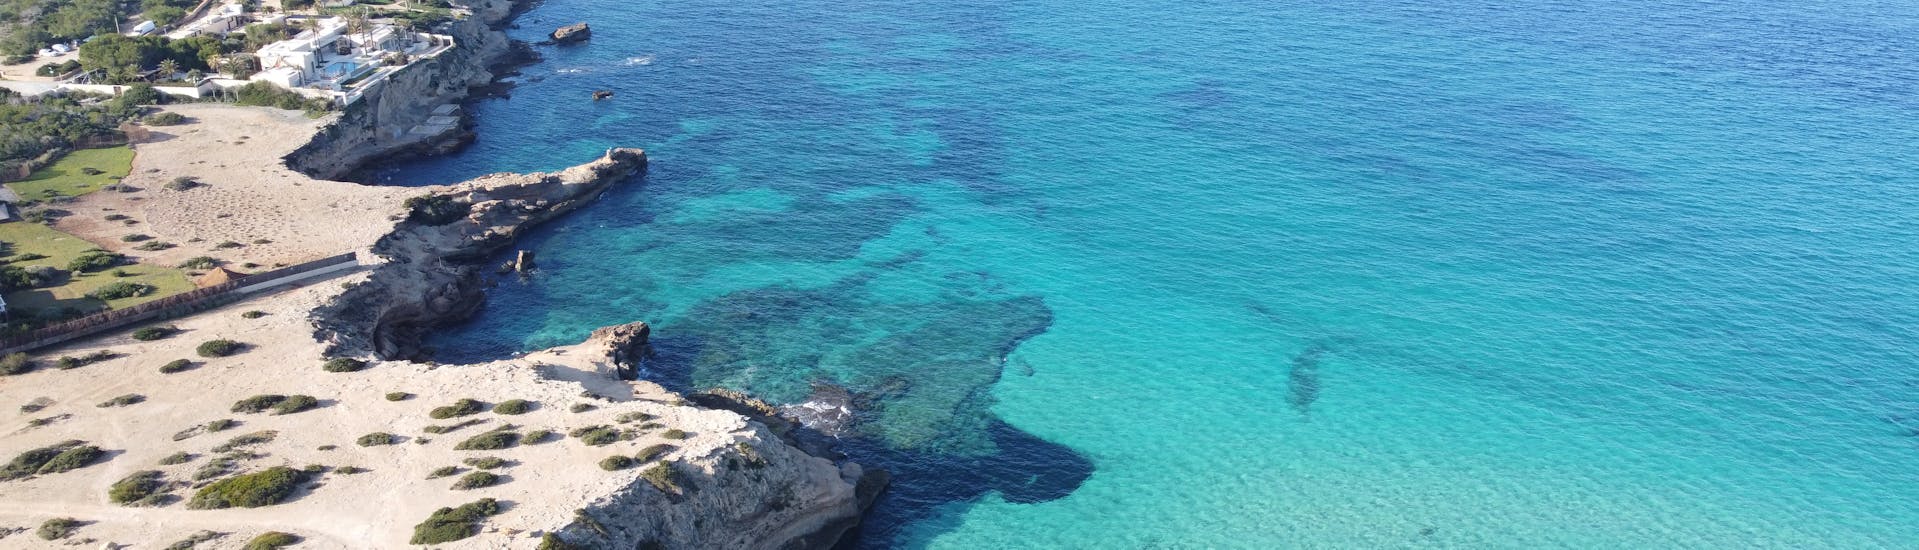 Landschap van het uitzicht tijdens een jetskisafari van San Antonio op Ibiza naar Cala Comte.